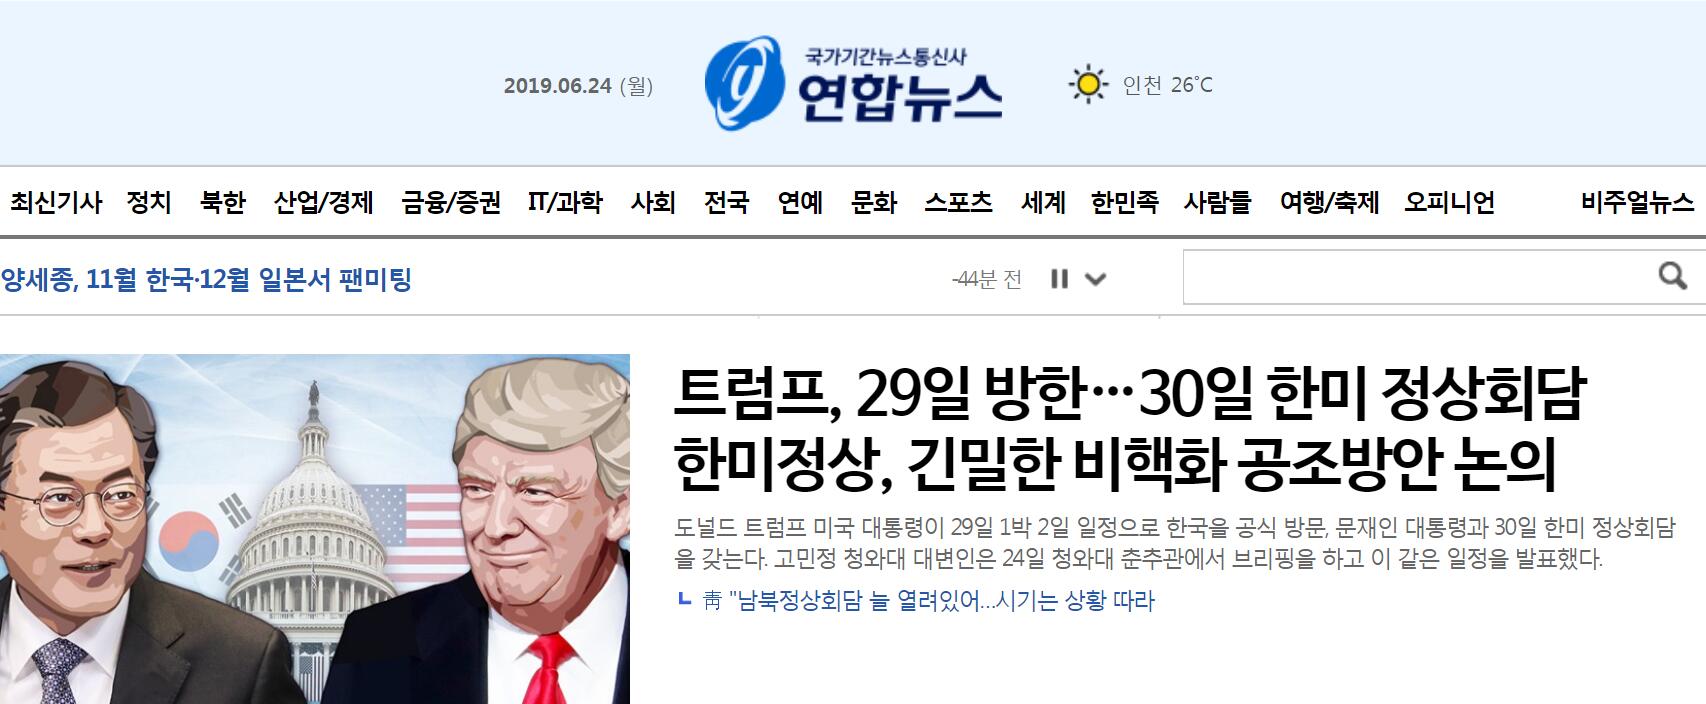 特朗普将于29日对韩国进行正式访问 